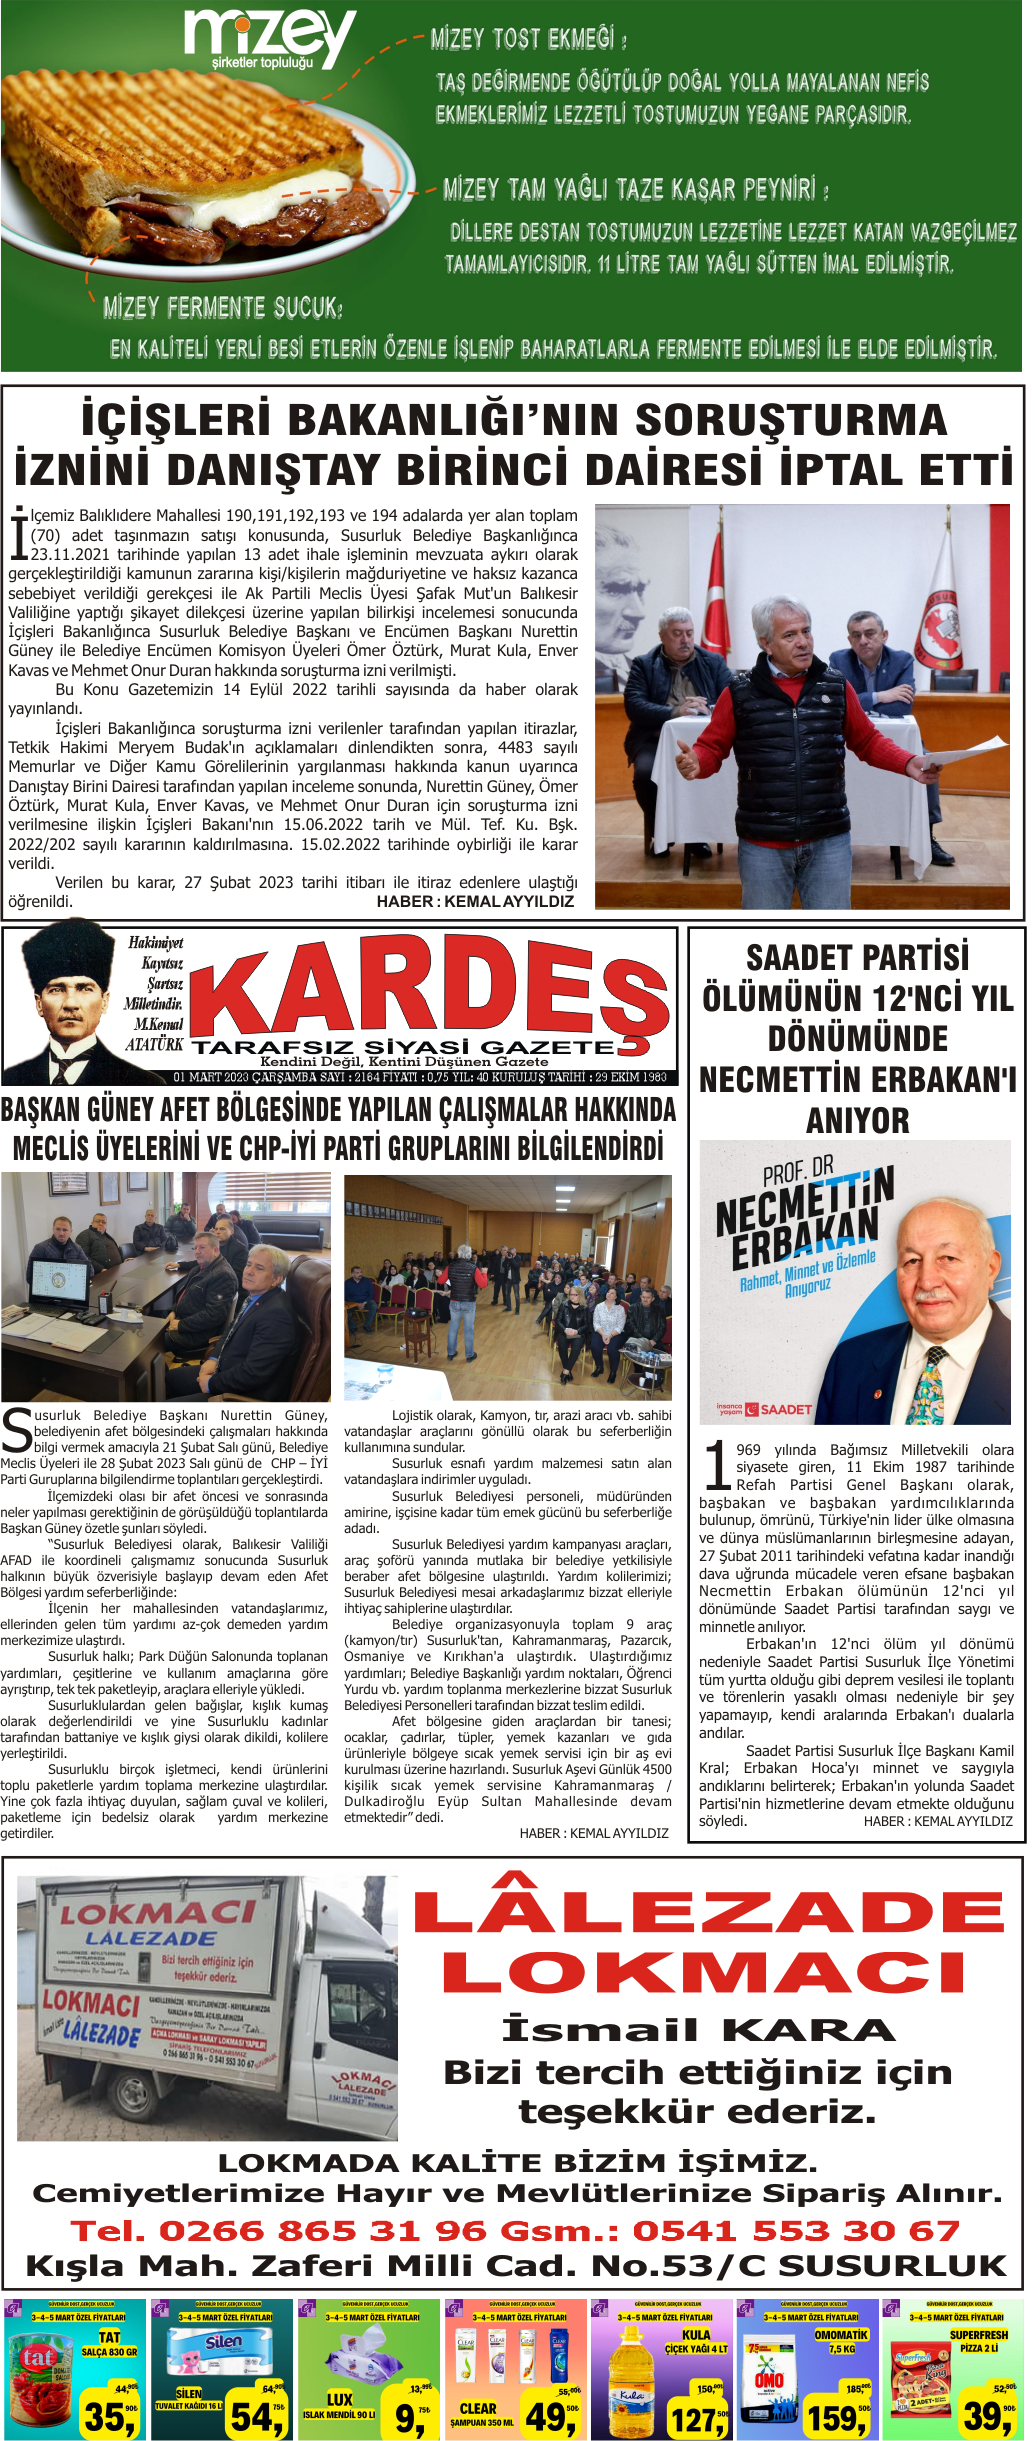 1.03.2023 Tarihli Kardeş Gazetesi